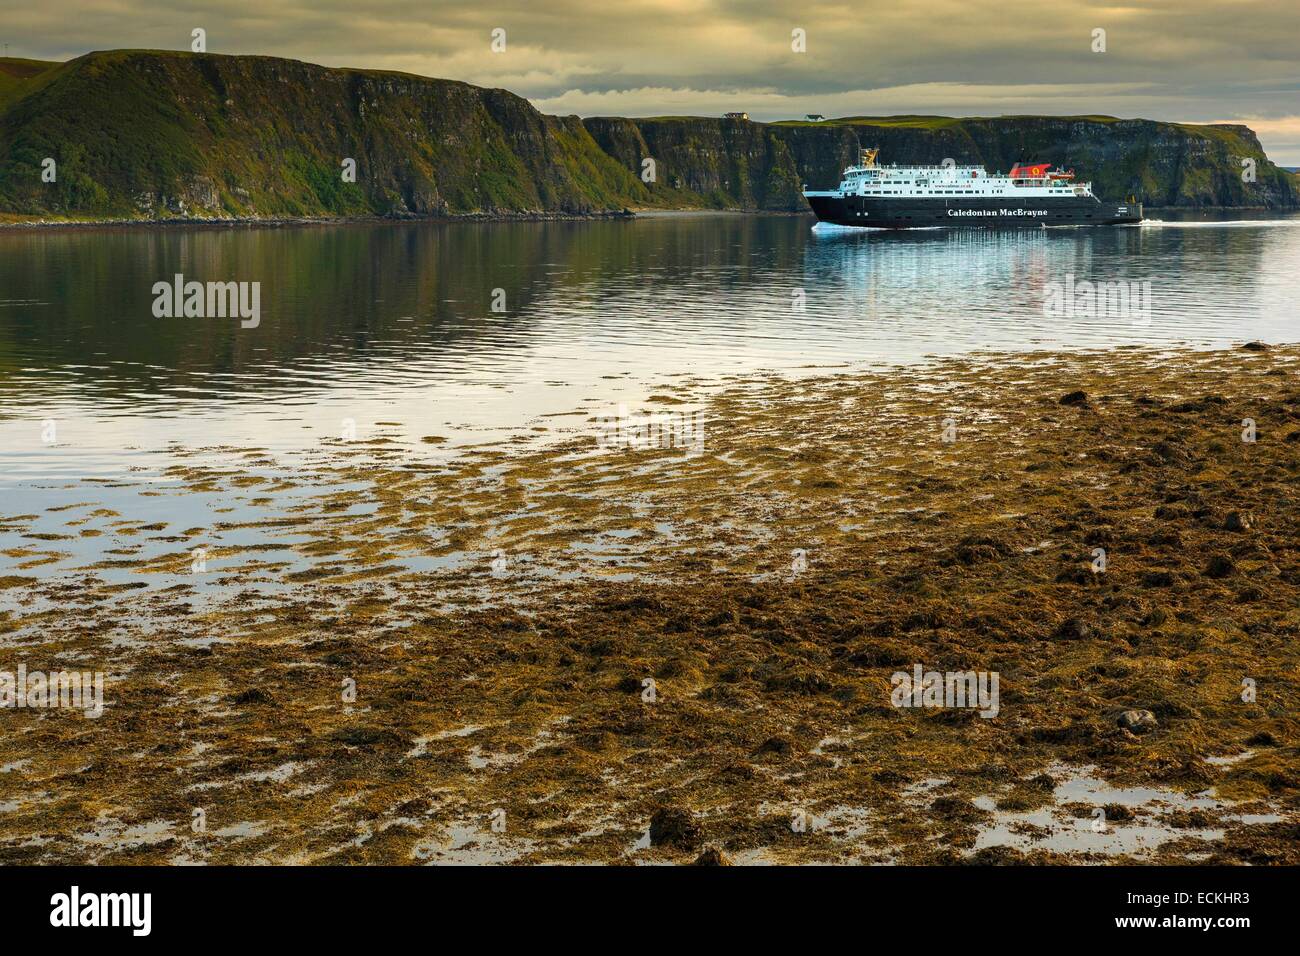 Reino Unido, Escocia, Isla de Skye, Uig, horizontal, Transporte Ferry Marina navegando a lo largo de los acantilados Foto de stock